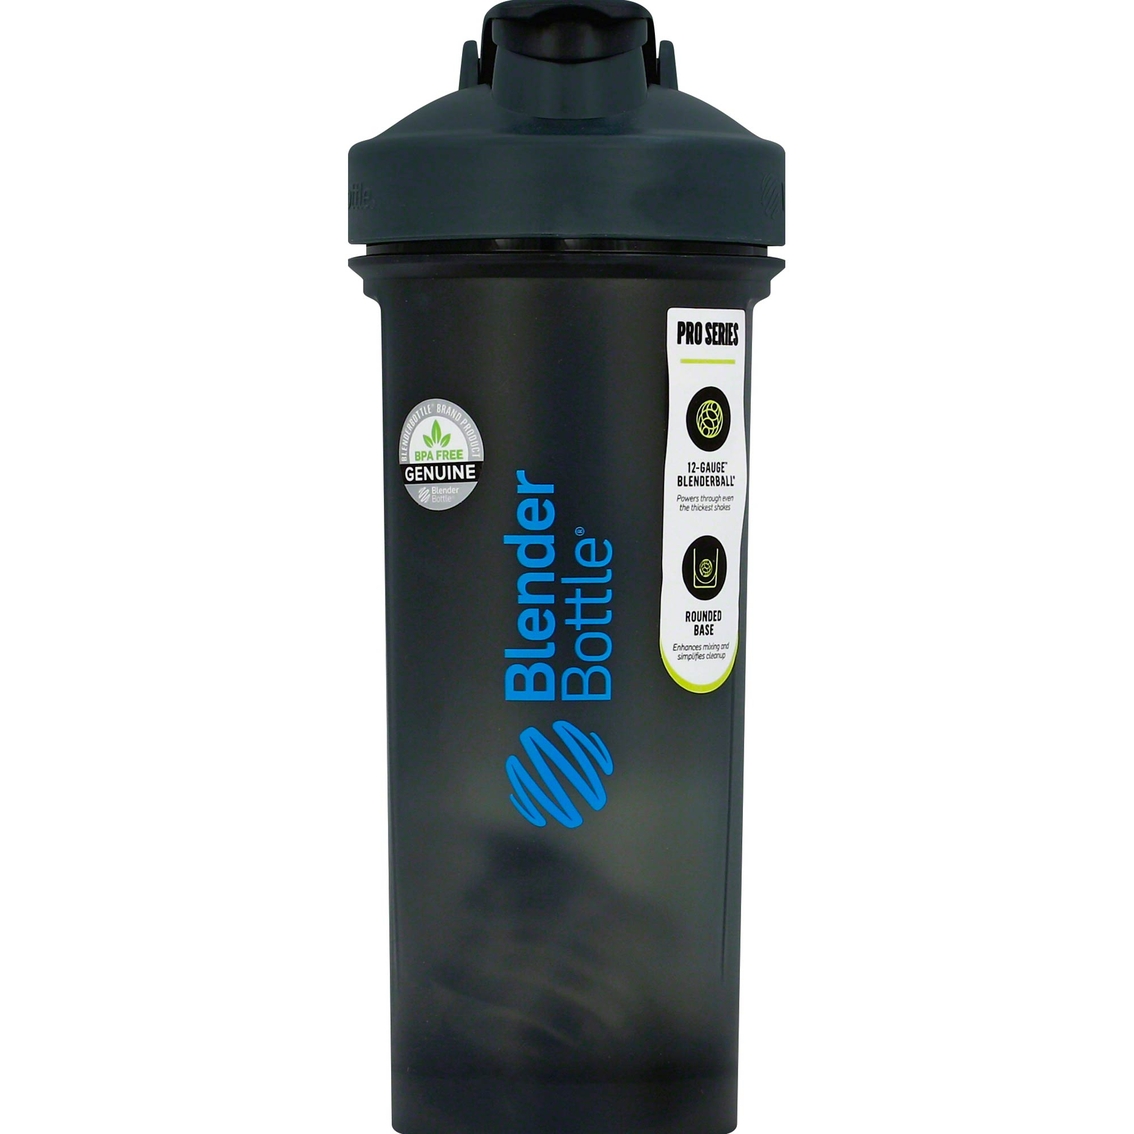 Buy Blender Bottle Harry Potter Pro Series Shaker Bottle